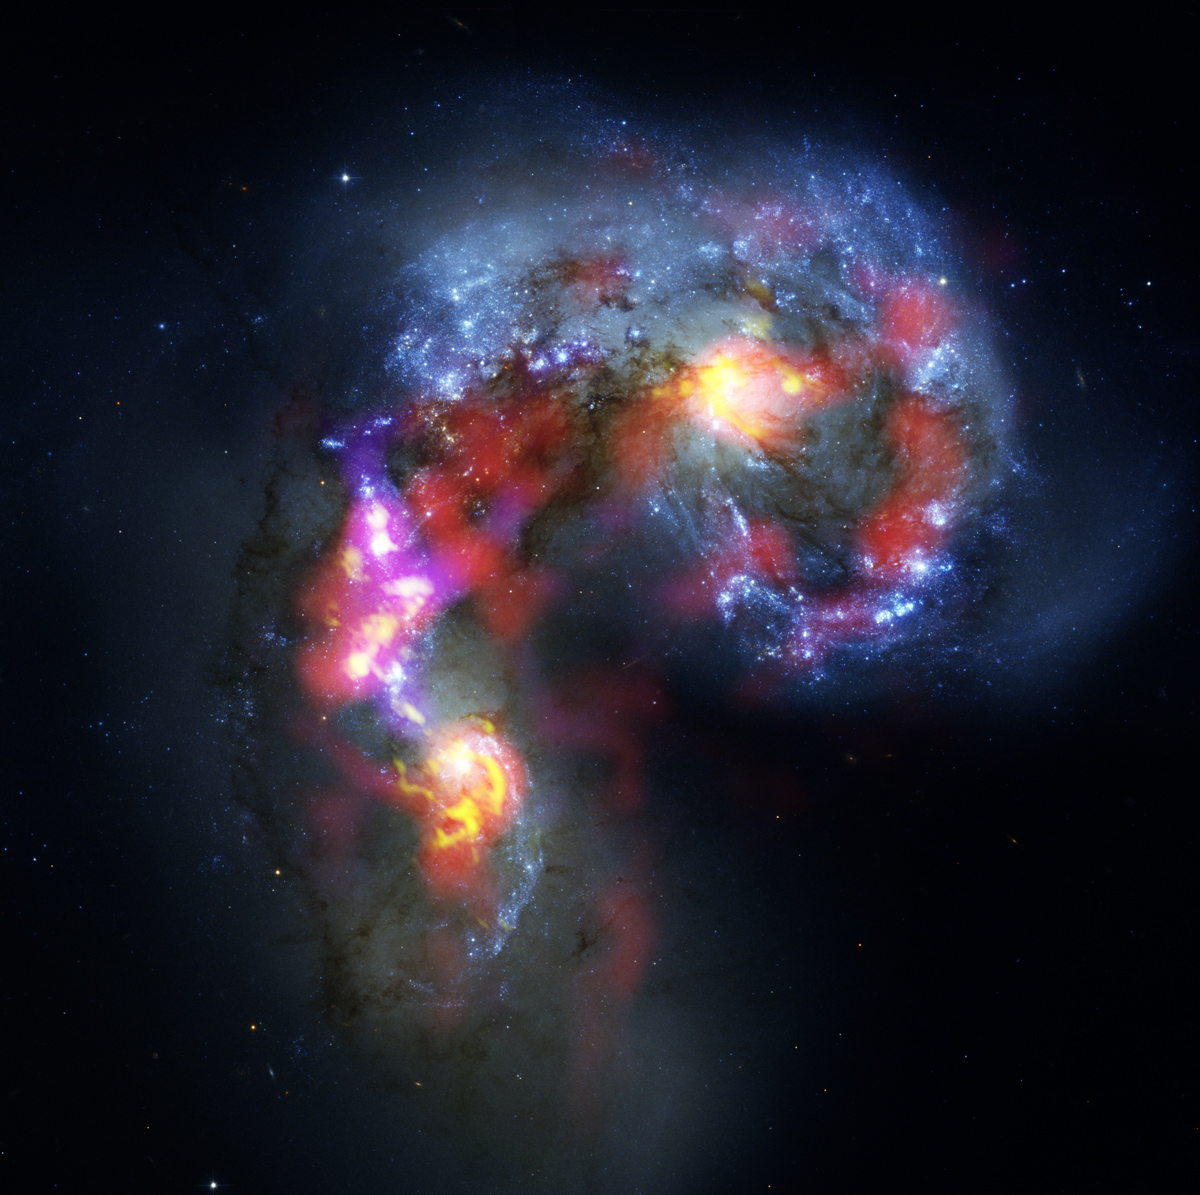 Las galaxias Antena (también conocidas como NGC 4038 y 4039) son un dúo de galaxias espiral en colisión y con formas distorsionadas que están a unos 70 millones de años-luz de distancia, en la constelación de Corvus (el Cuervo). Esta imagen combina observaciones realizadas por ALMA durante la etapa de pruebas y observaciones en longitudes de onda de luz visible hechas con el telescopio espacial Hubble de la NASA y ESA. La imagen del Hubble es la más precisa que se haya captado de este objeto y sirve de referencia en términos de resolución. ALMA realiza observaciones en longitudes de onda mucho más largas, con lo cual es más difícil obtener imágenes tan nítidas. Sin embargo, cuando el conjunto de ALMA esté construido, su capacidad de resolución será diez veces superior a la del Hubble. La mayor parte de las observaciones de prueba de ALMA usadas para crear esta imagen se hicieron utilizadando solo doce antenas -menos de las que se usarán para las primeras observaciones científicas- y con separaciones mucho menores entre ellas, por lo cual no es más que un atisbo de lo que está por venir. A medida que el observatorio crezca y se vayan incorporando nuevas antenas, aumentará exponencialmente la precisión, eficiencia y calidad de sus observaciones. Aun así, esta es la mejor imagen que se haya obtenido de las galaxias Antena en ondas submilimétricas, lo que marca un hito en la exploración del Universo submilimétrico. Mientras que la observación en luz visible (representada principalmente en azul en esta imagen) permite detectar estrellas recién formadas en las galaxias, ALMA revela objetos imposible de observar en esa longitud de onda, como lo son las densas nubes de gas frío donde se forman las estrellas. Las observaciones de ALMA (representadas aquí en rojo, rosado y amarillo) se realizaron en longitudes de onda milimétricas y submilimétricas específicas para detectar la presencia de moléculas de monóxido de carbono en nubes de hidrógeno -invisibles en otras longitudes de onda-, donde se forman las estrellas. Se descubrieron concentraciones masivas de gas no solo en el corazón de ambas galaxias, sino también en la caótica zona donde entran en colisión. Allí, la cantidad de gas supera en miles de millones de veces la masa de nuestro Sol, lo que constituye una rica reserva de material para las futuras generaciones de estrellas. Este tipo de observaciones serán vitales para comprender cómo las colisiones de galaxias pueden provocar el nacimiento de estrellas. Este es solo un ejemplo de cómo ALMA revela partes del Universo que no pueden ser observadas por los telescopios ópticos e infrarrojos. Créditos: ALMA (ESO/NAOJ/NRAO). Imagen en luz visible: telescopio espacial Hubble de NASA/ESA.